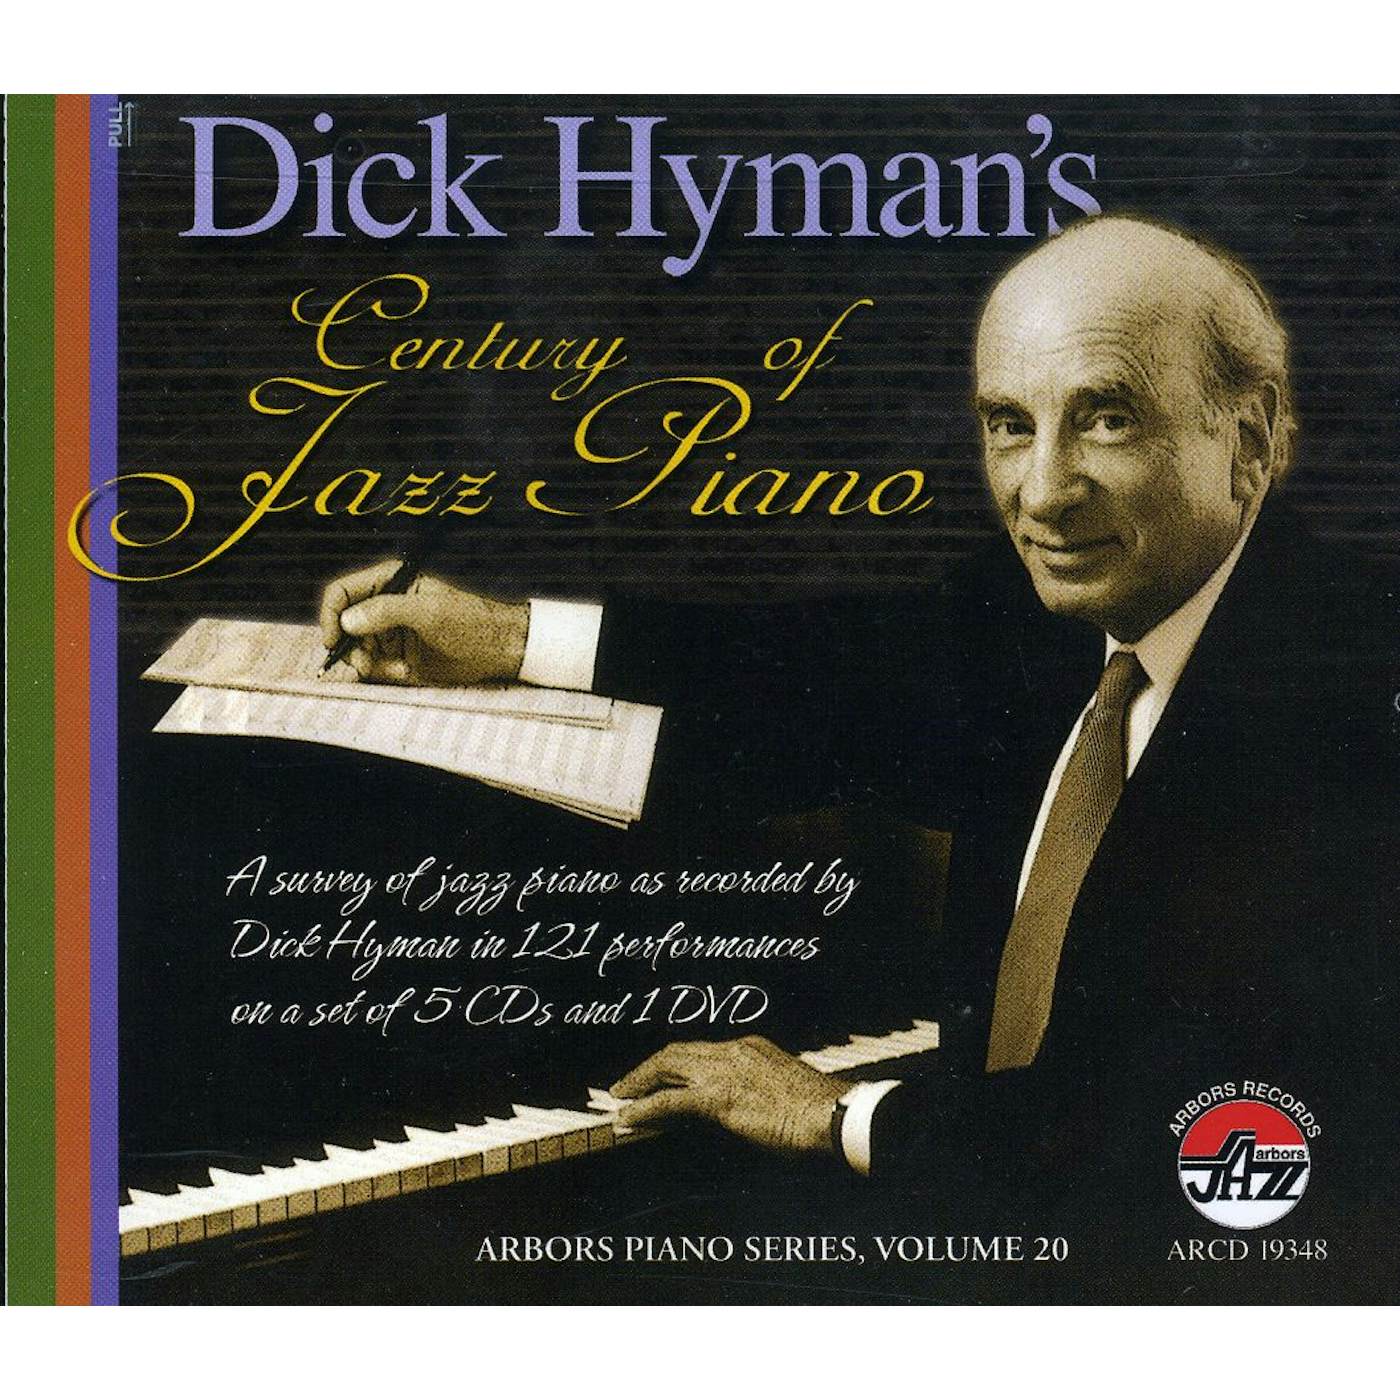 Dick Hyman CENTURY OF JAZZ PIANO CD